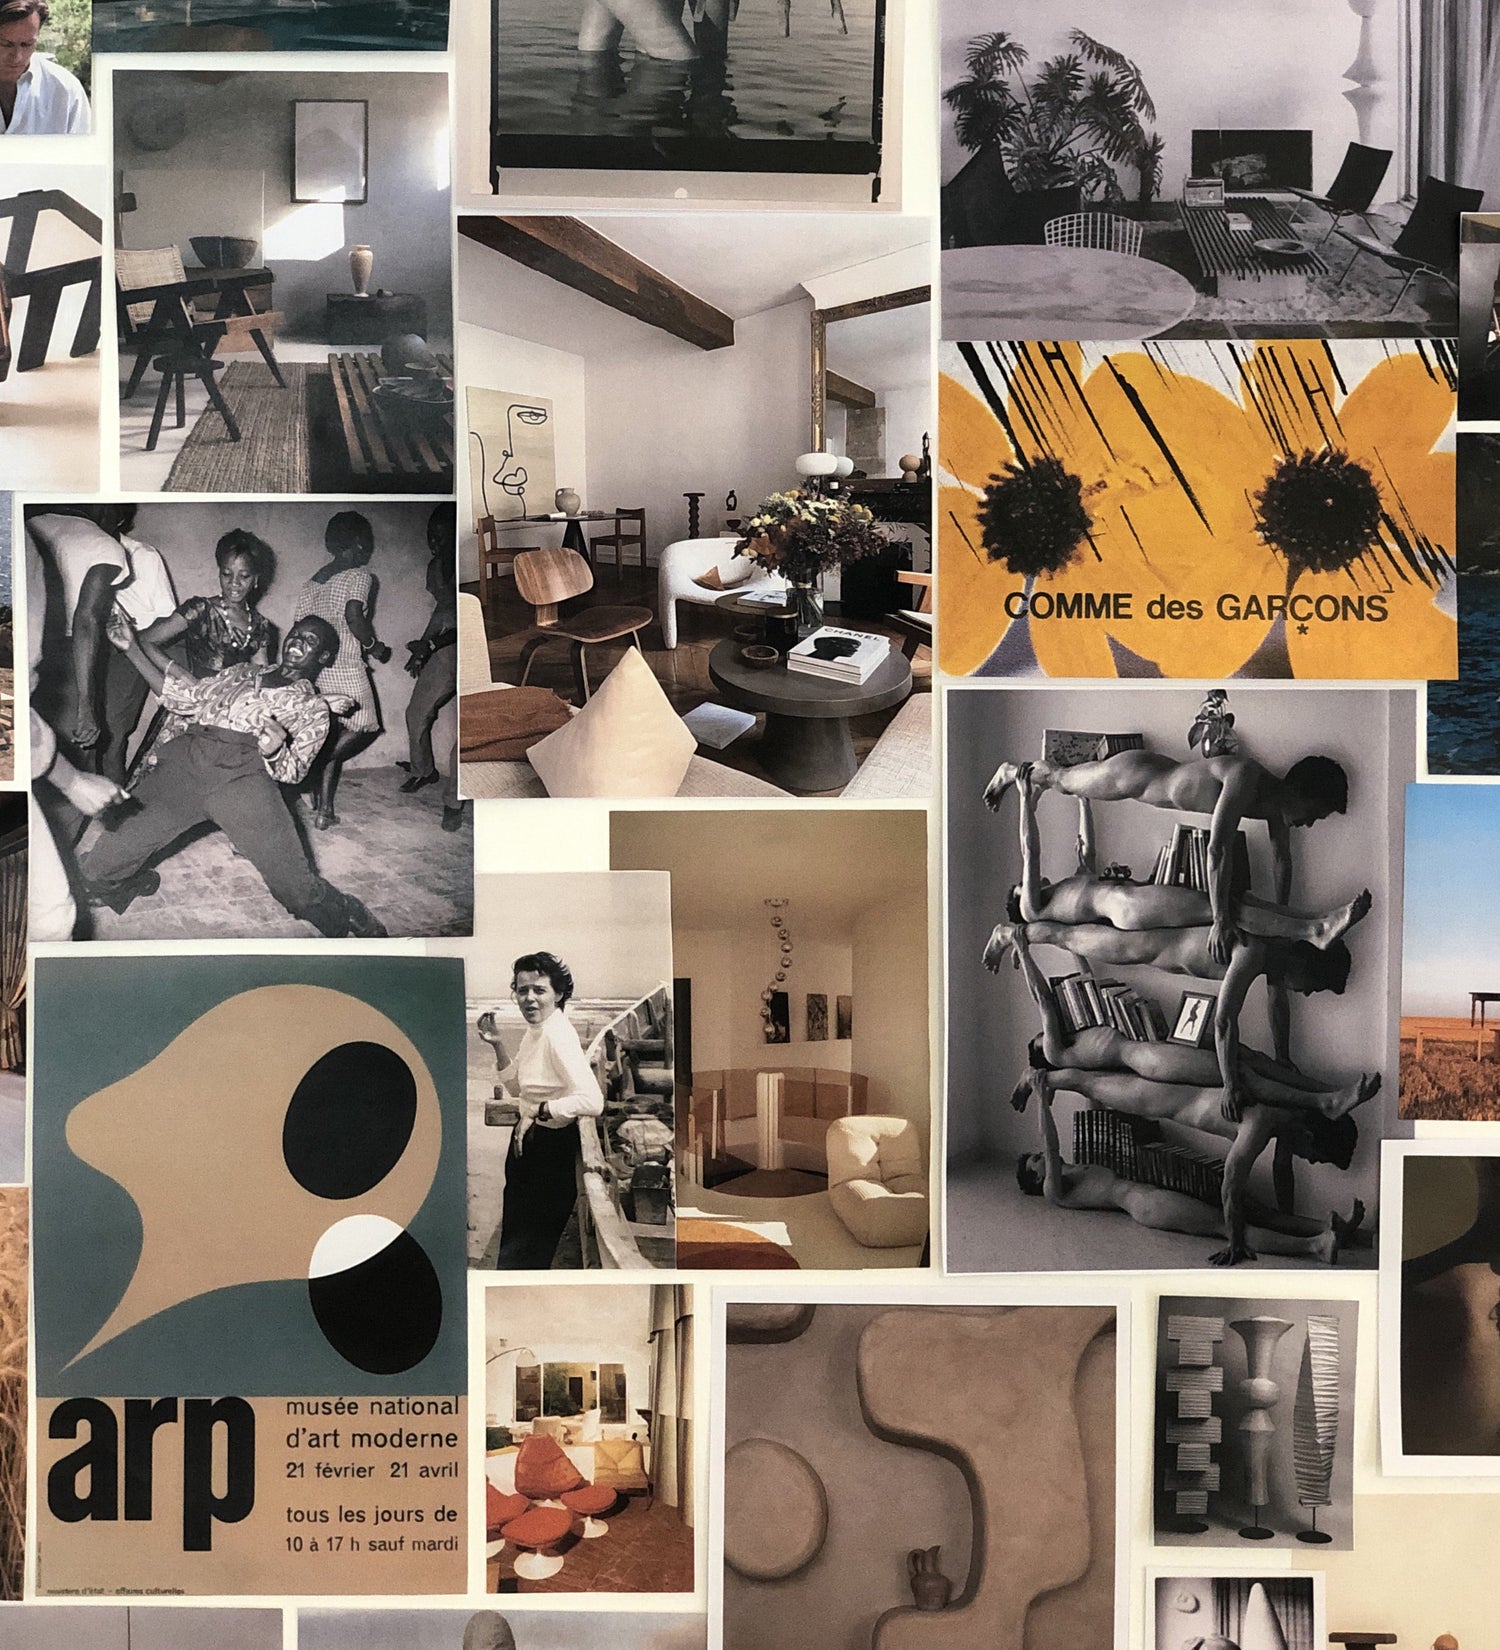 Moodboard d'inspirations de la marque Bien Paris Jean Arp Charotte Perriand